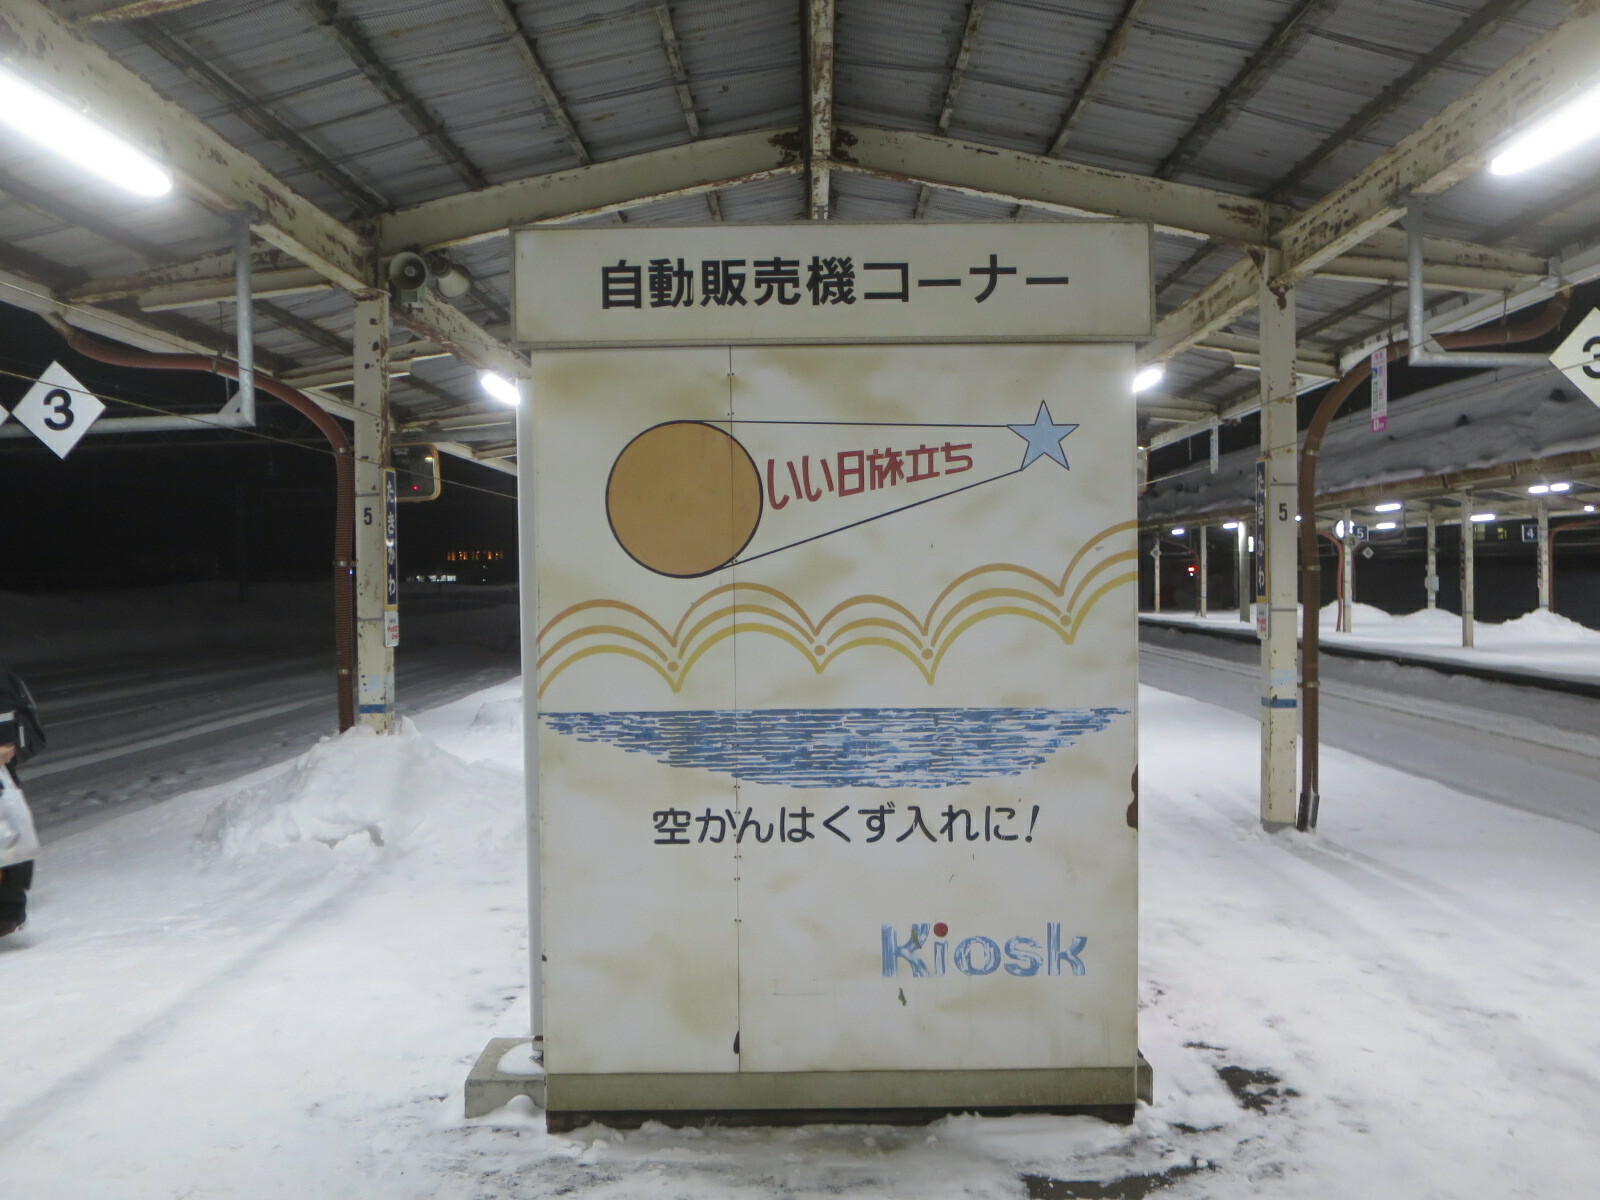 滝川駅の自動販売機に残っていた「いい日旅立ち」のロゴマーク（現存せず）